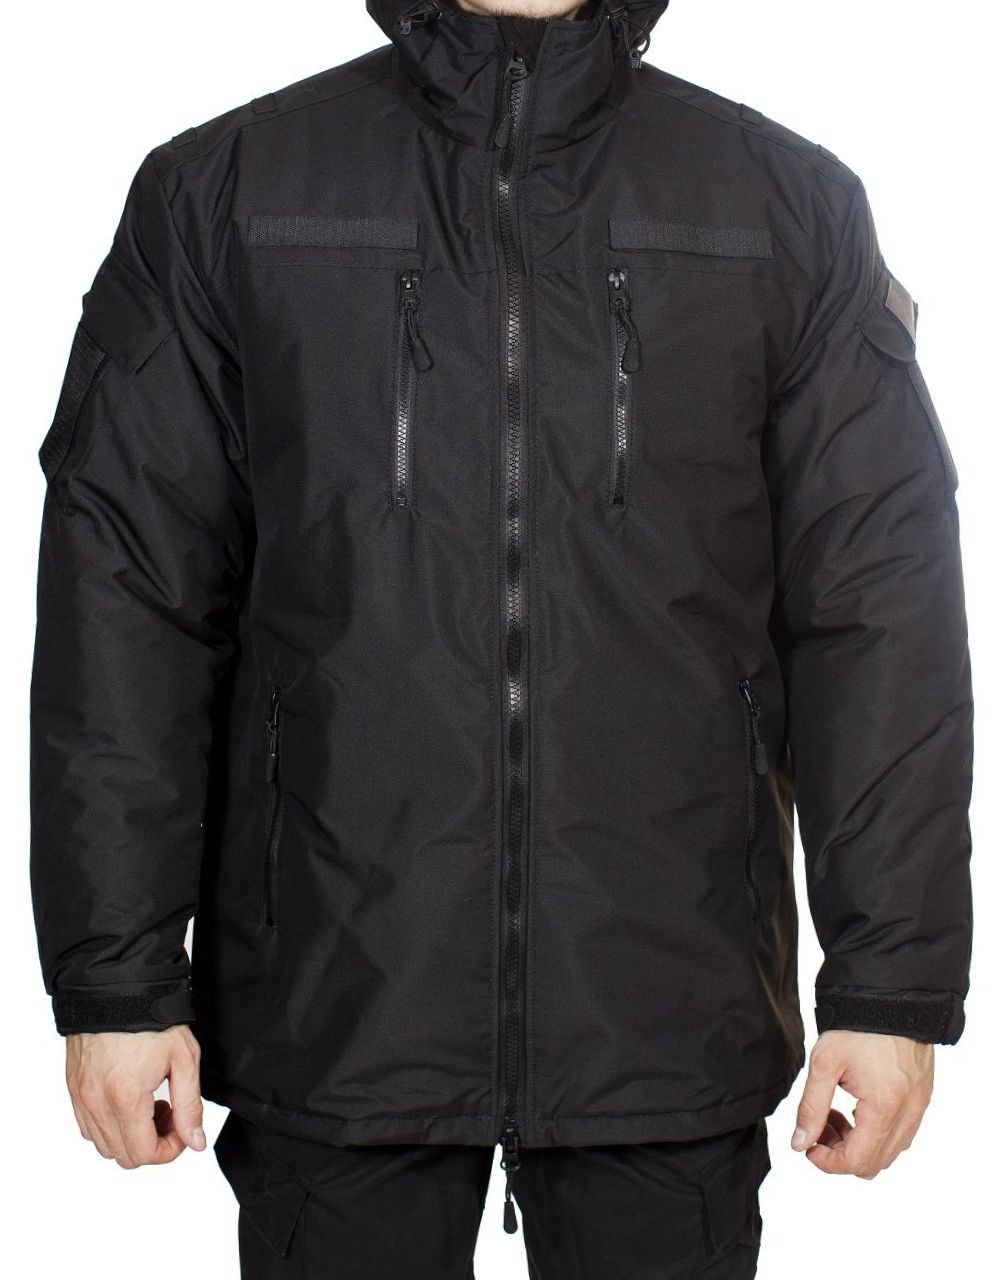 Куртка мужская черного цвета. Куртка Магеллан МПА-78-02 черная. Куртка зимняя МПА-39 (МО-2). Куртка ДС Магеллан МПА-78-02 чёрная. Куртка зимняя МПА-39 МО-2 ткань рип-стоп мембрана синяя.